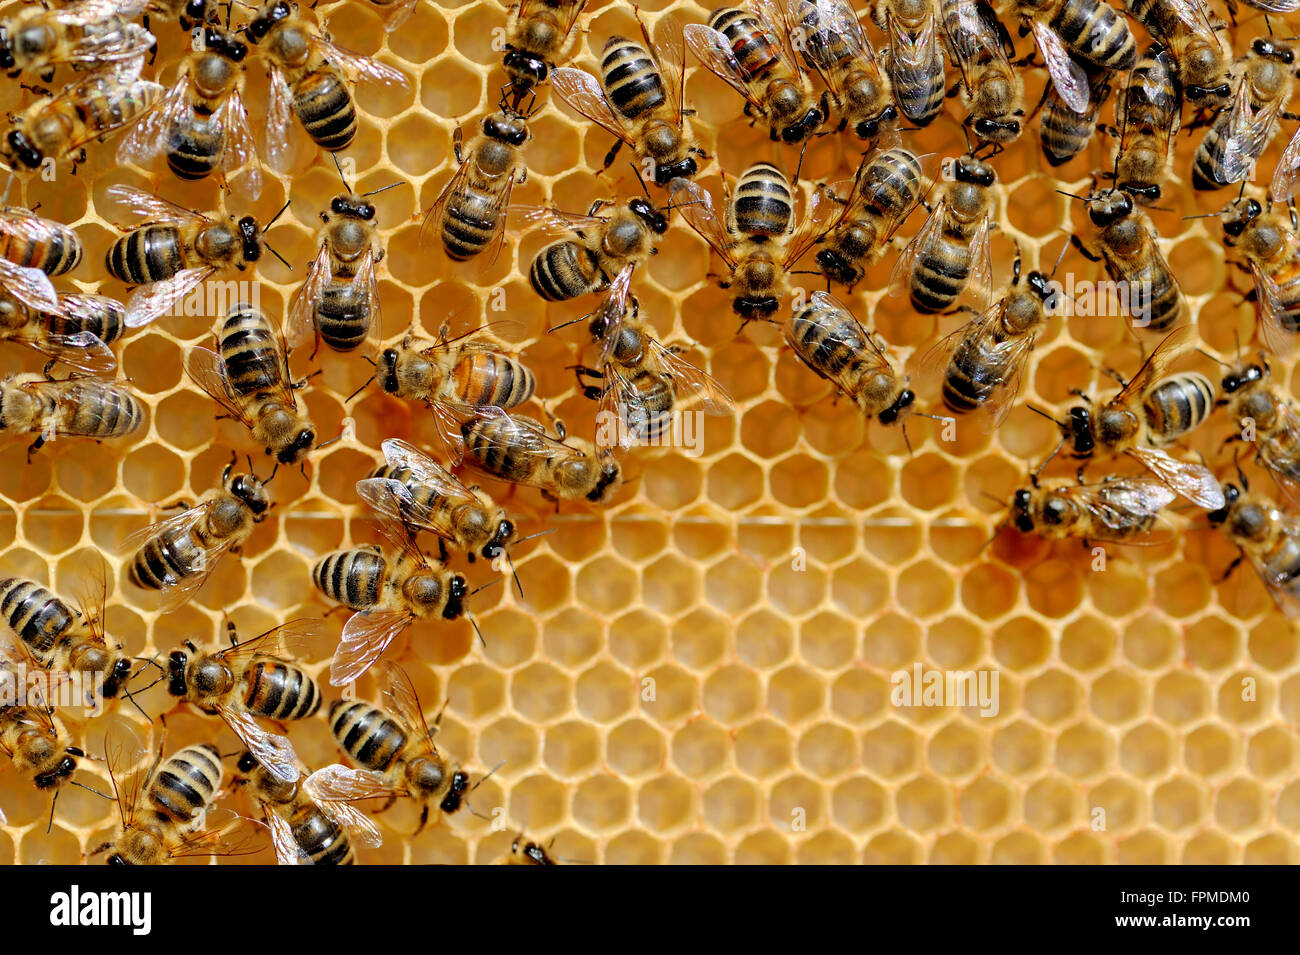 Vue rapprochée du groupe abeilles sur les cellules de miel Banque D'Images